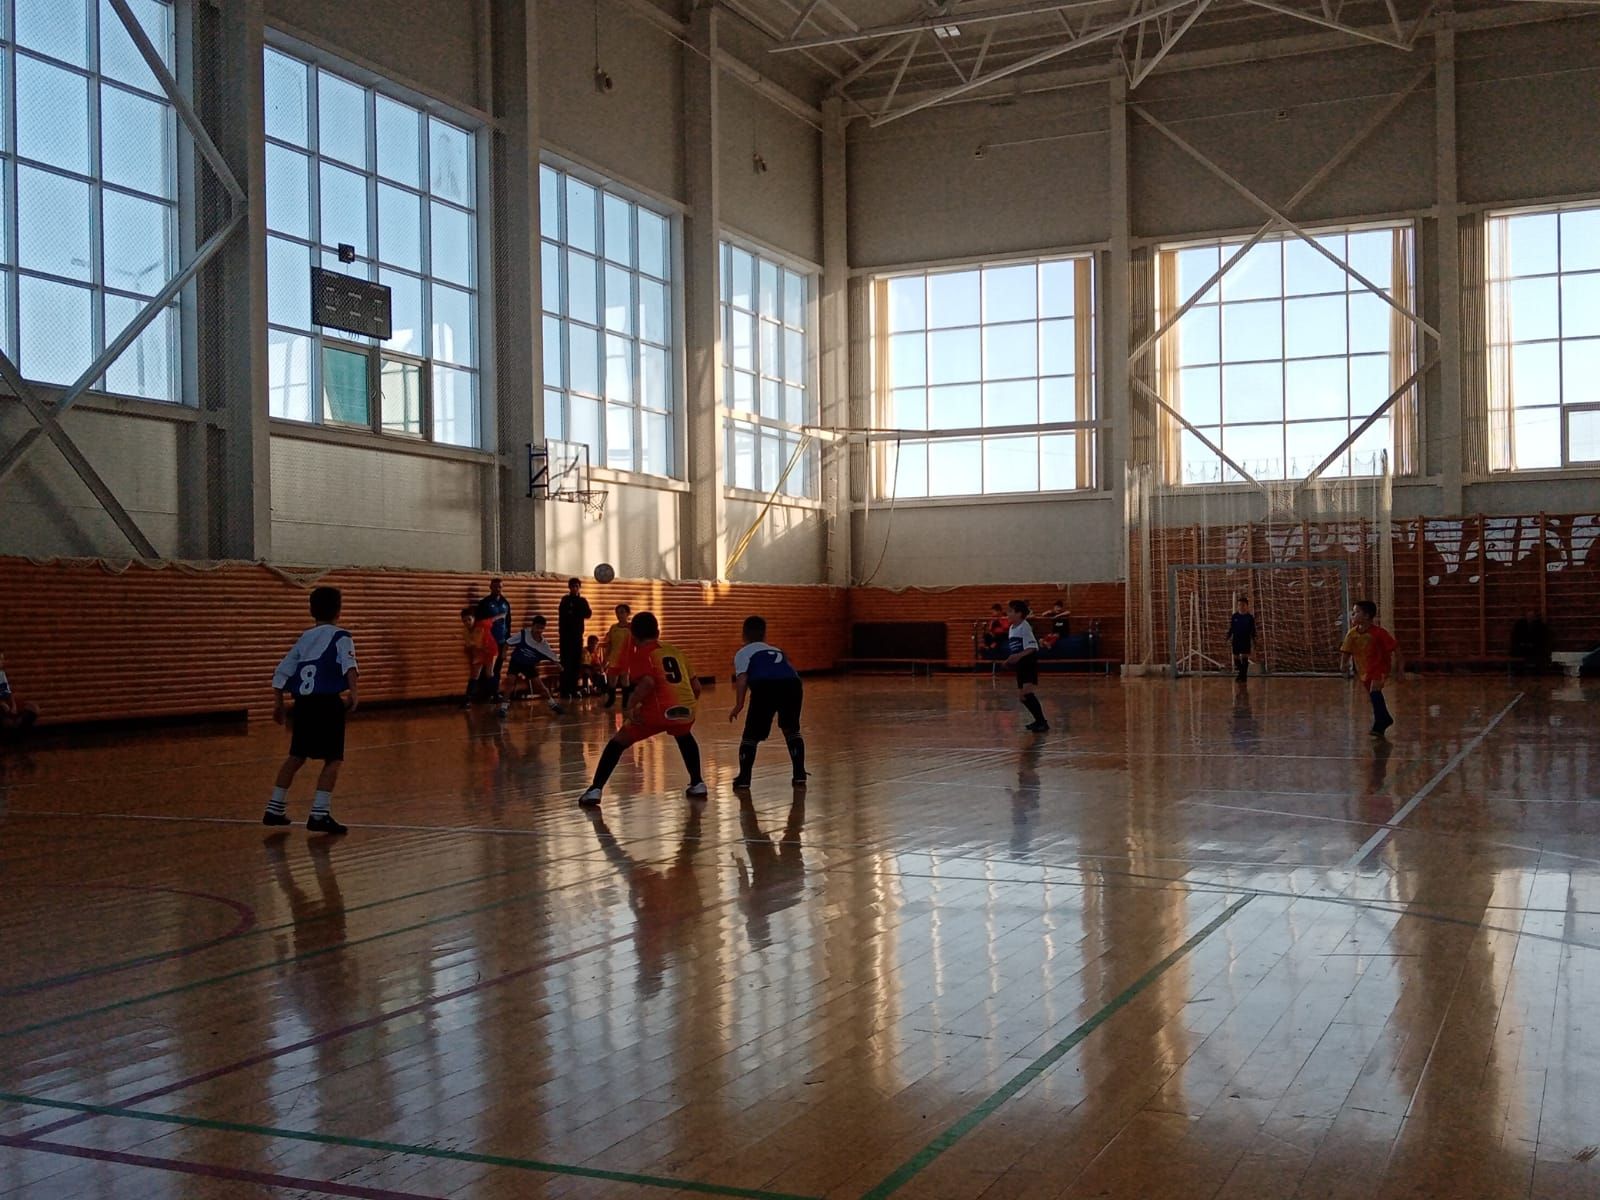 Мини – футбол буенча Татарстан Республикасы беренчелегенең зона этабы узды